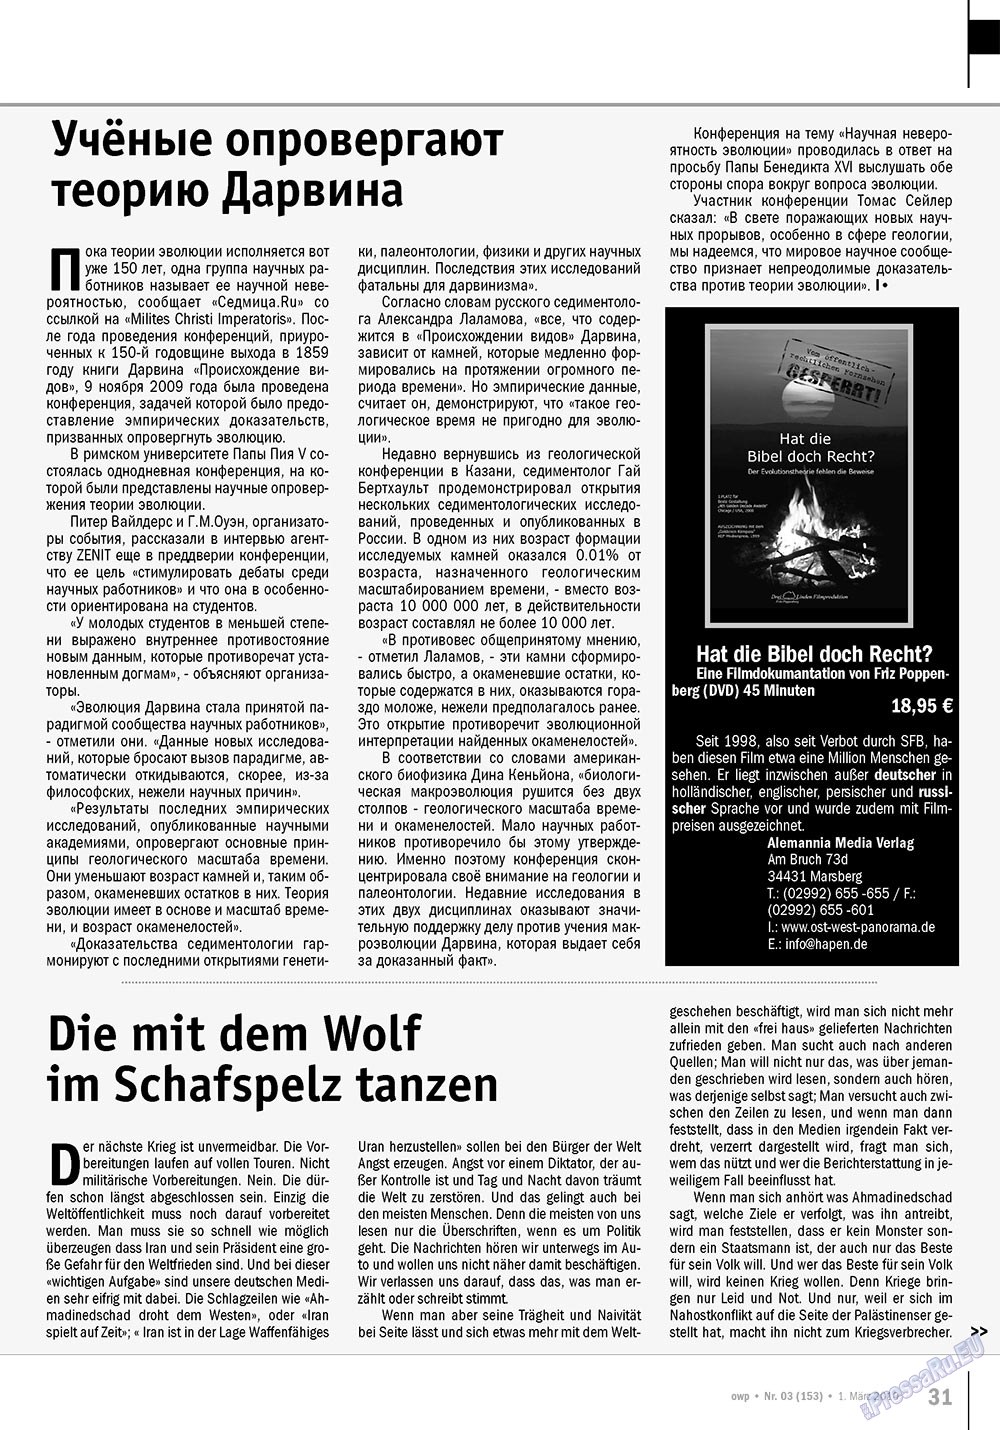 Ost-West Panorama (журнал). 2010 год, номер 3, стр. 31